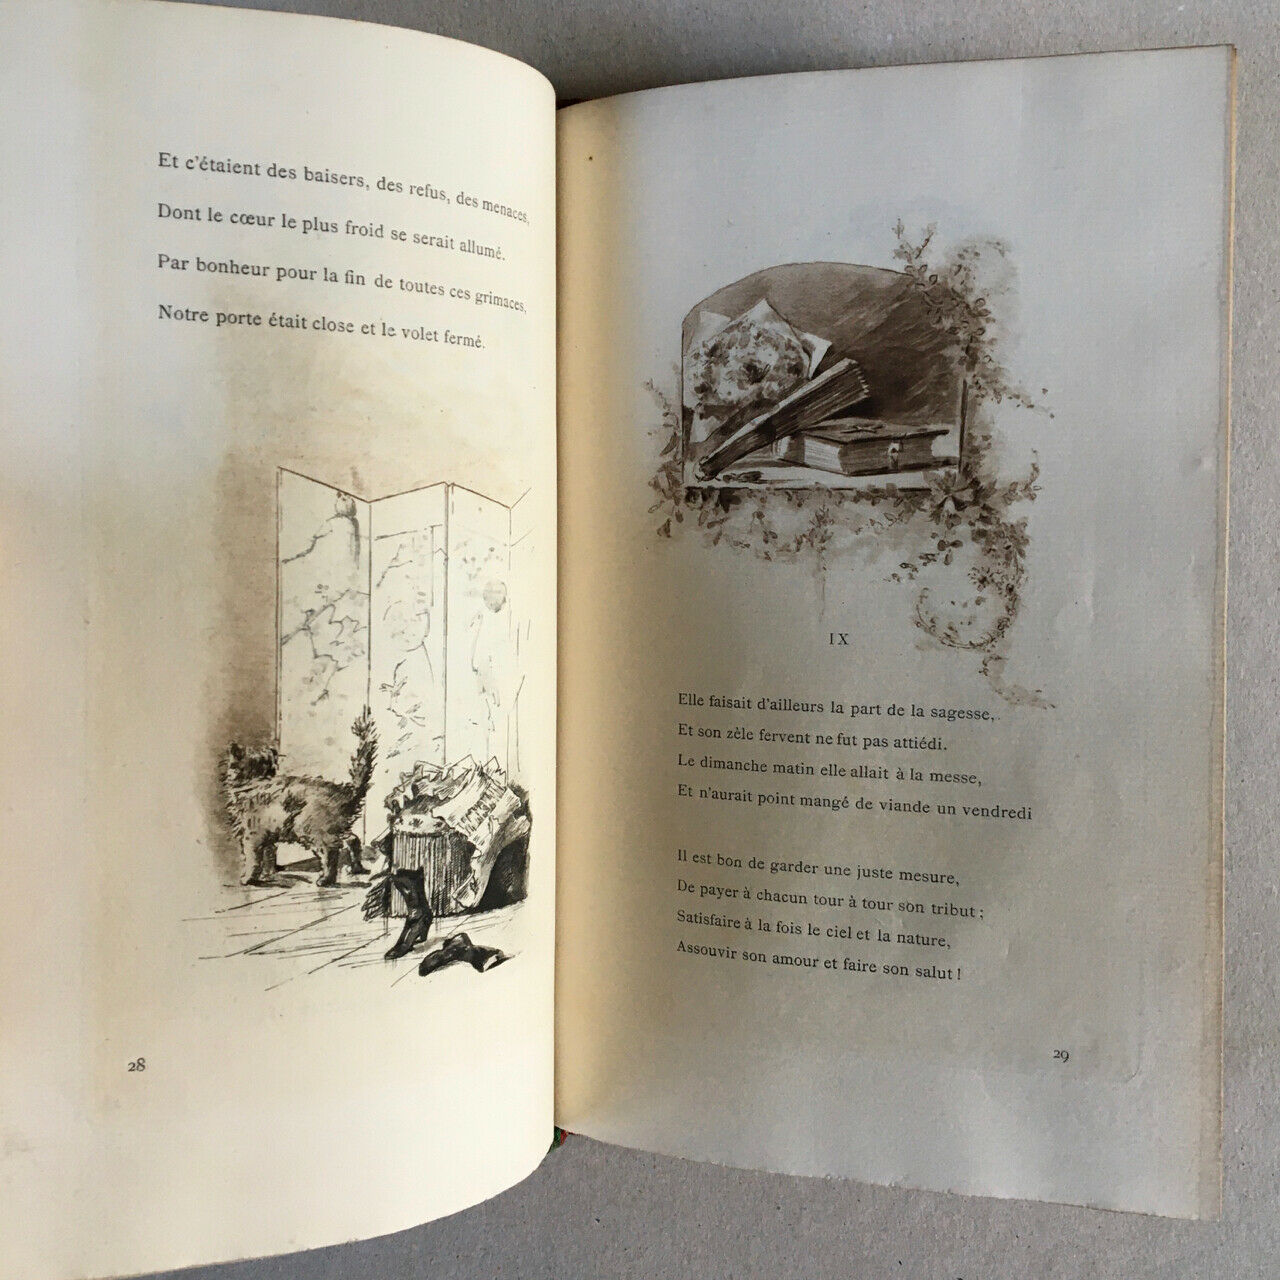 Aurélien Scholl — Denise — illustrations par Grivaz — Rouveyre & Blond — 1884.